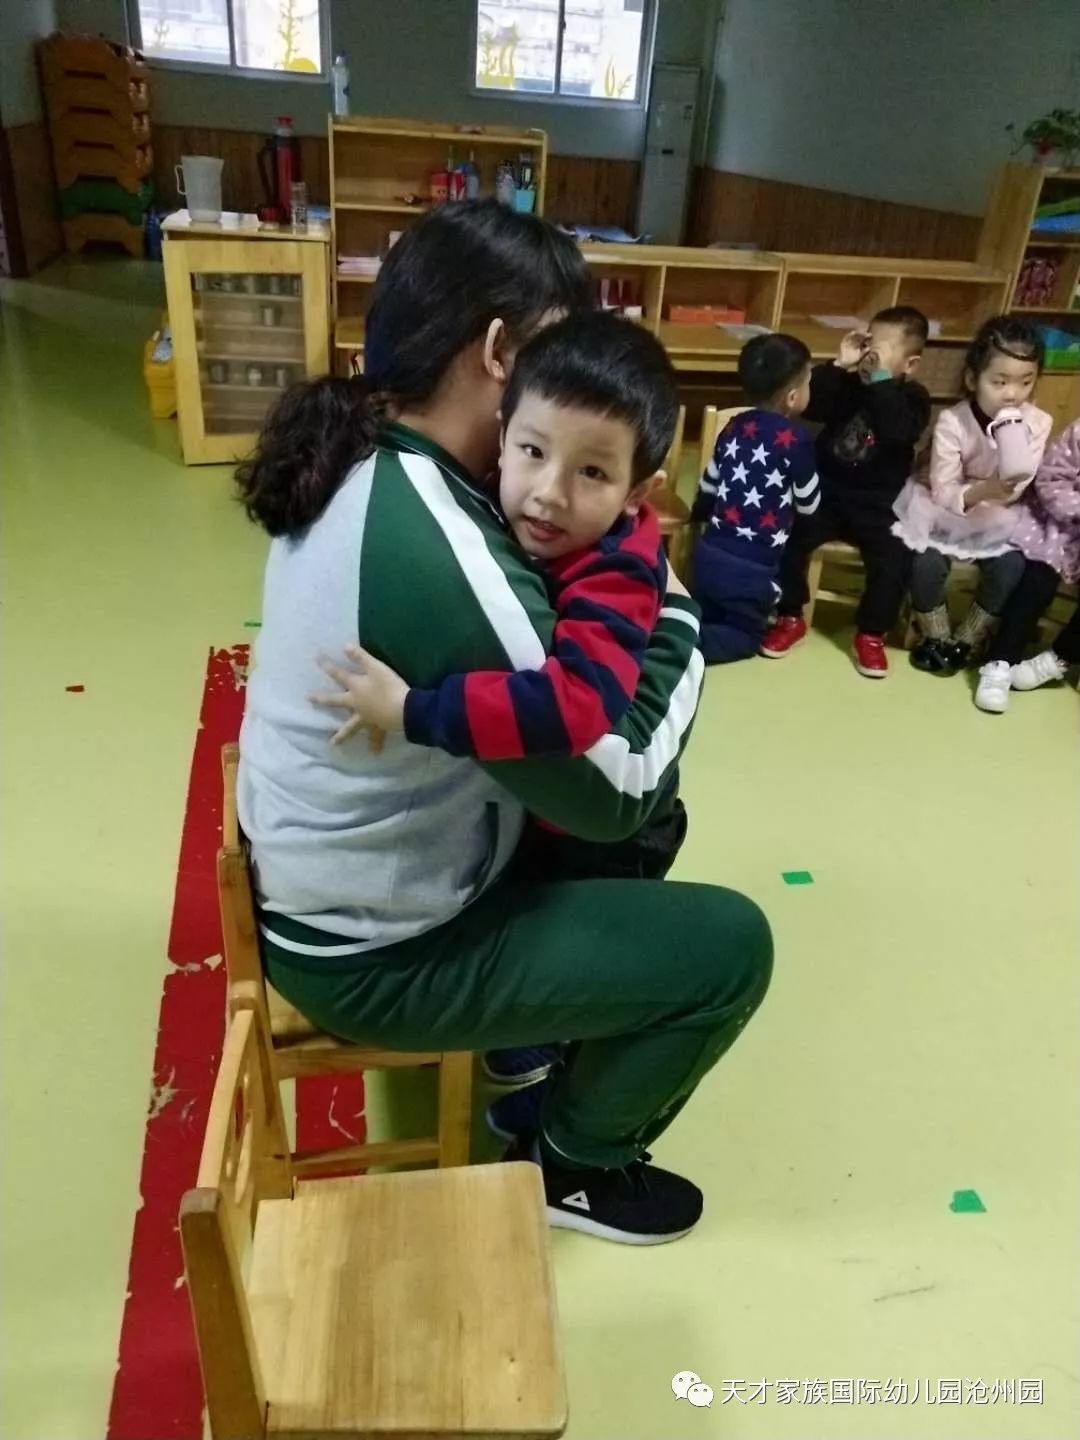 通过下午离园老师给每个孩子的"爱的抱抱"结束一天幼儿园丰富多彩的